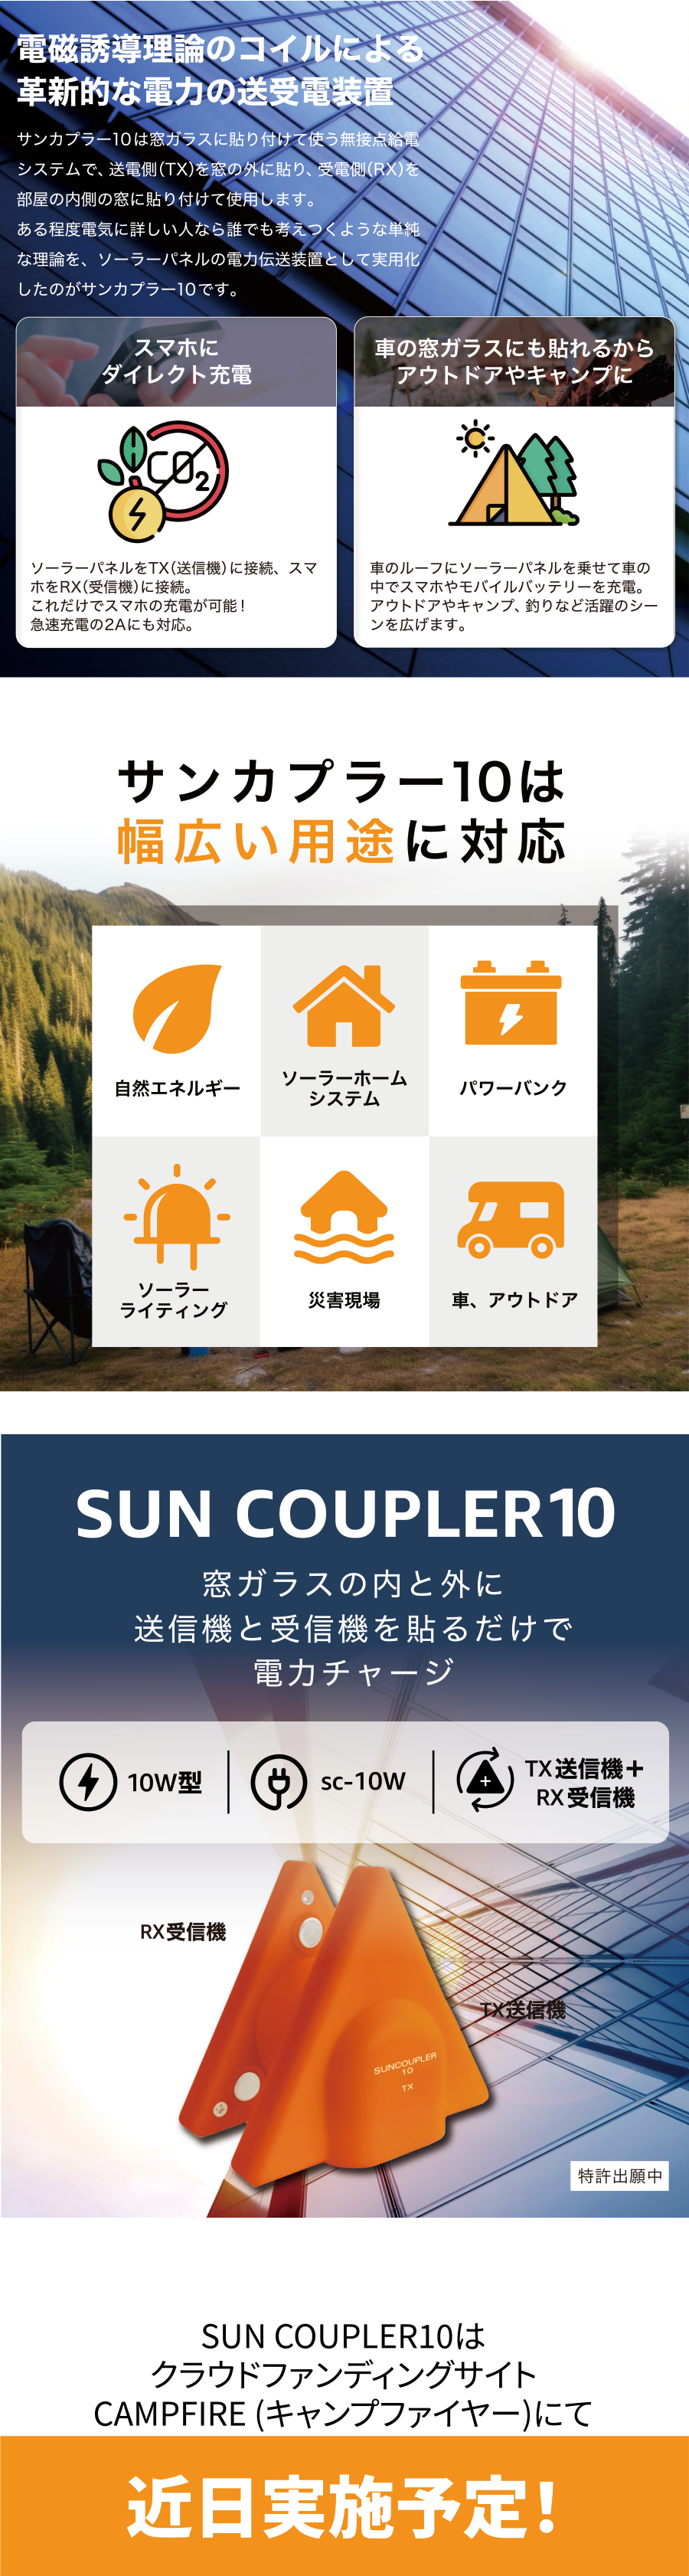 SUN COUPLER10_P2